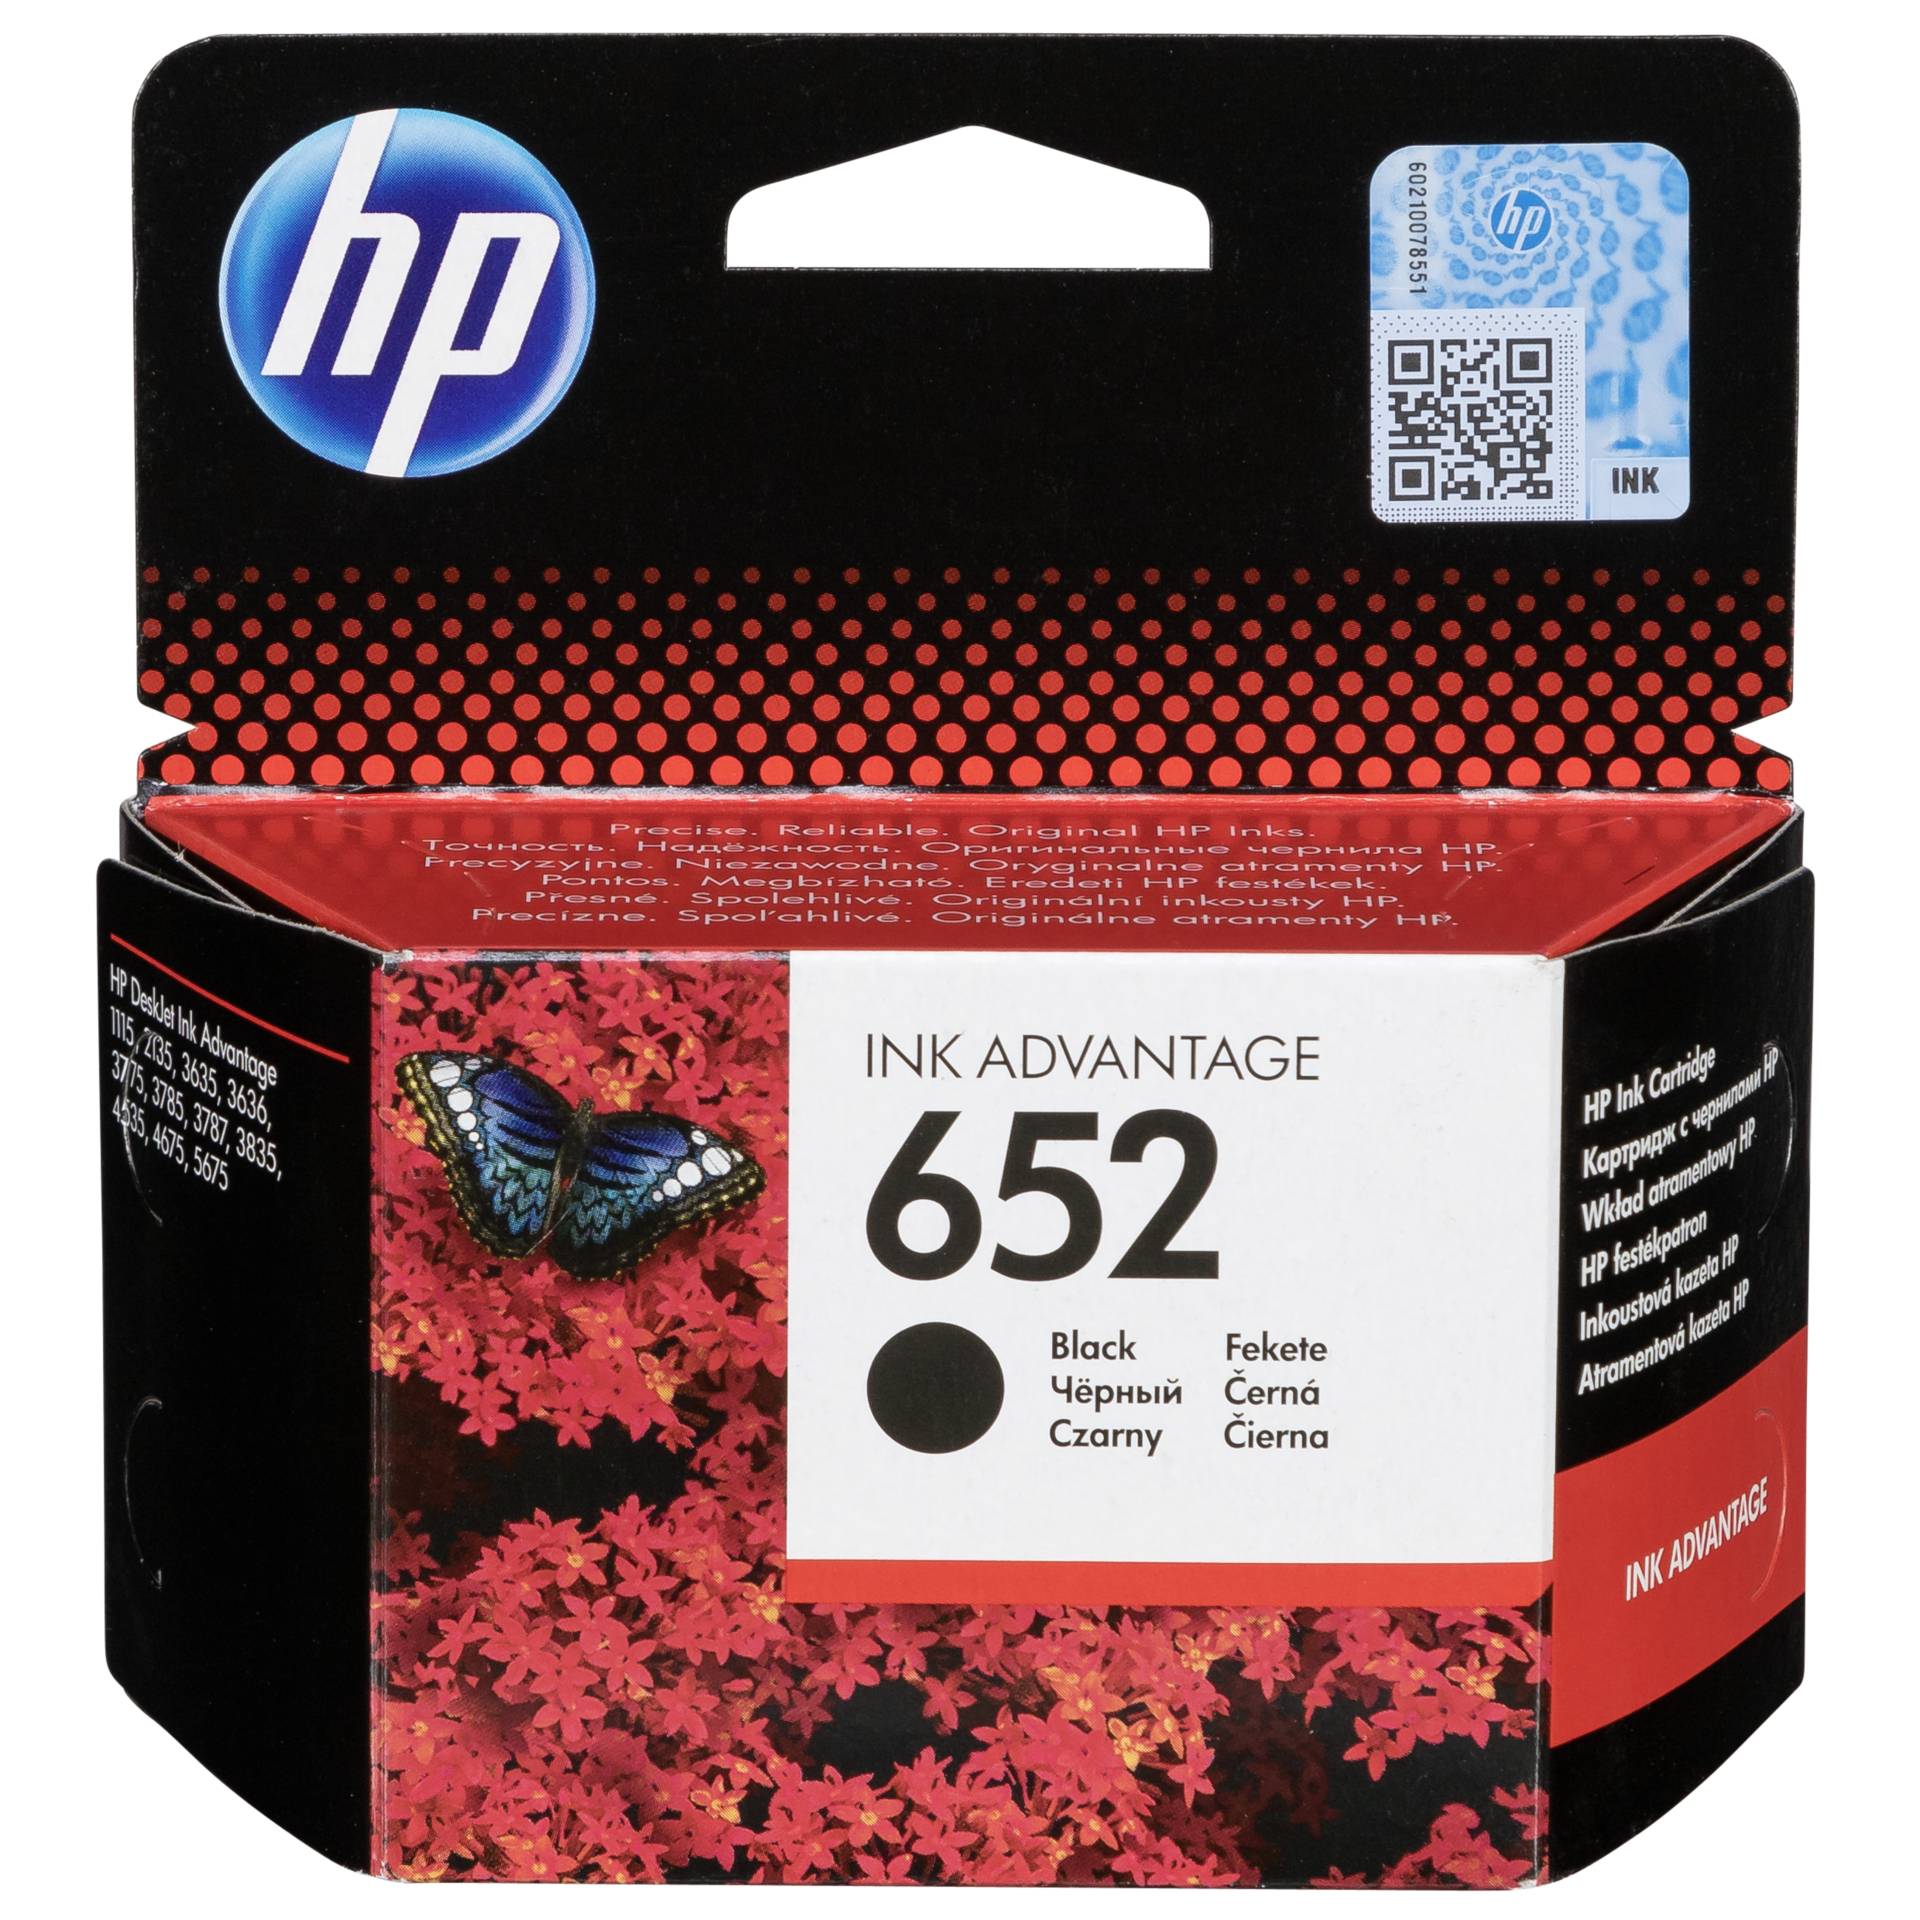 HP Druckkopf mit Tinte 652 schwarz 360 Seiten